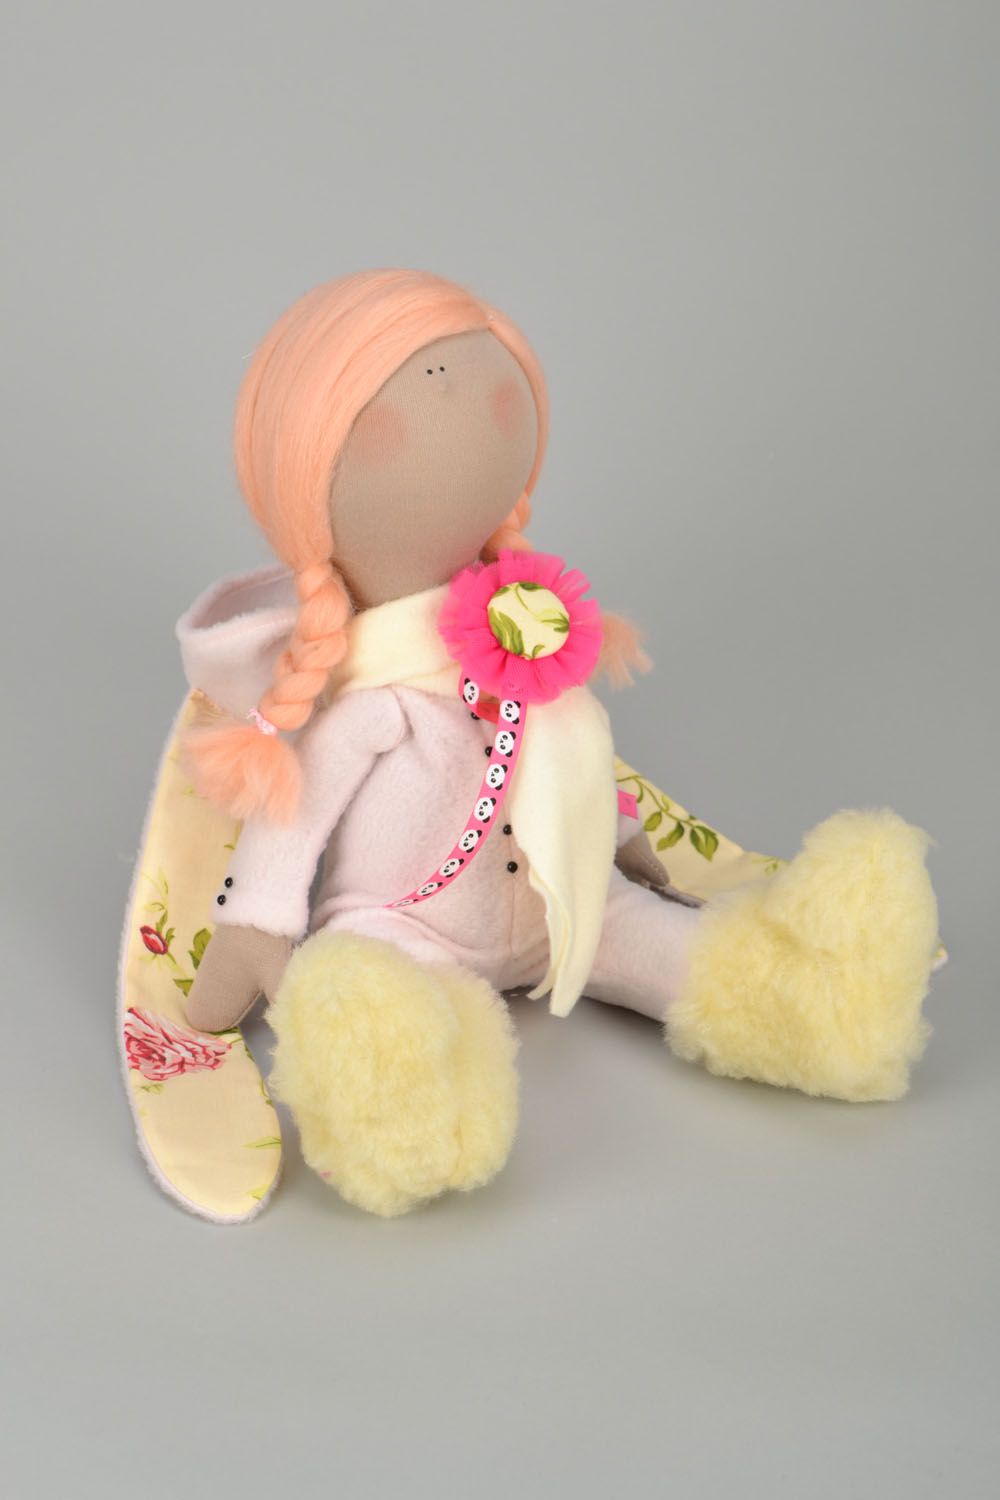 Designer doll with braids photo 3